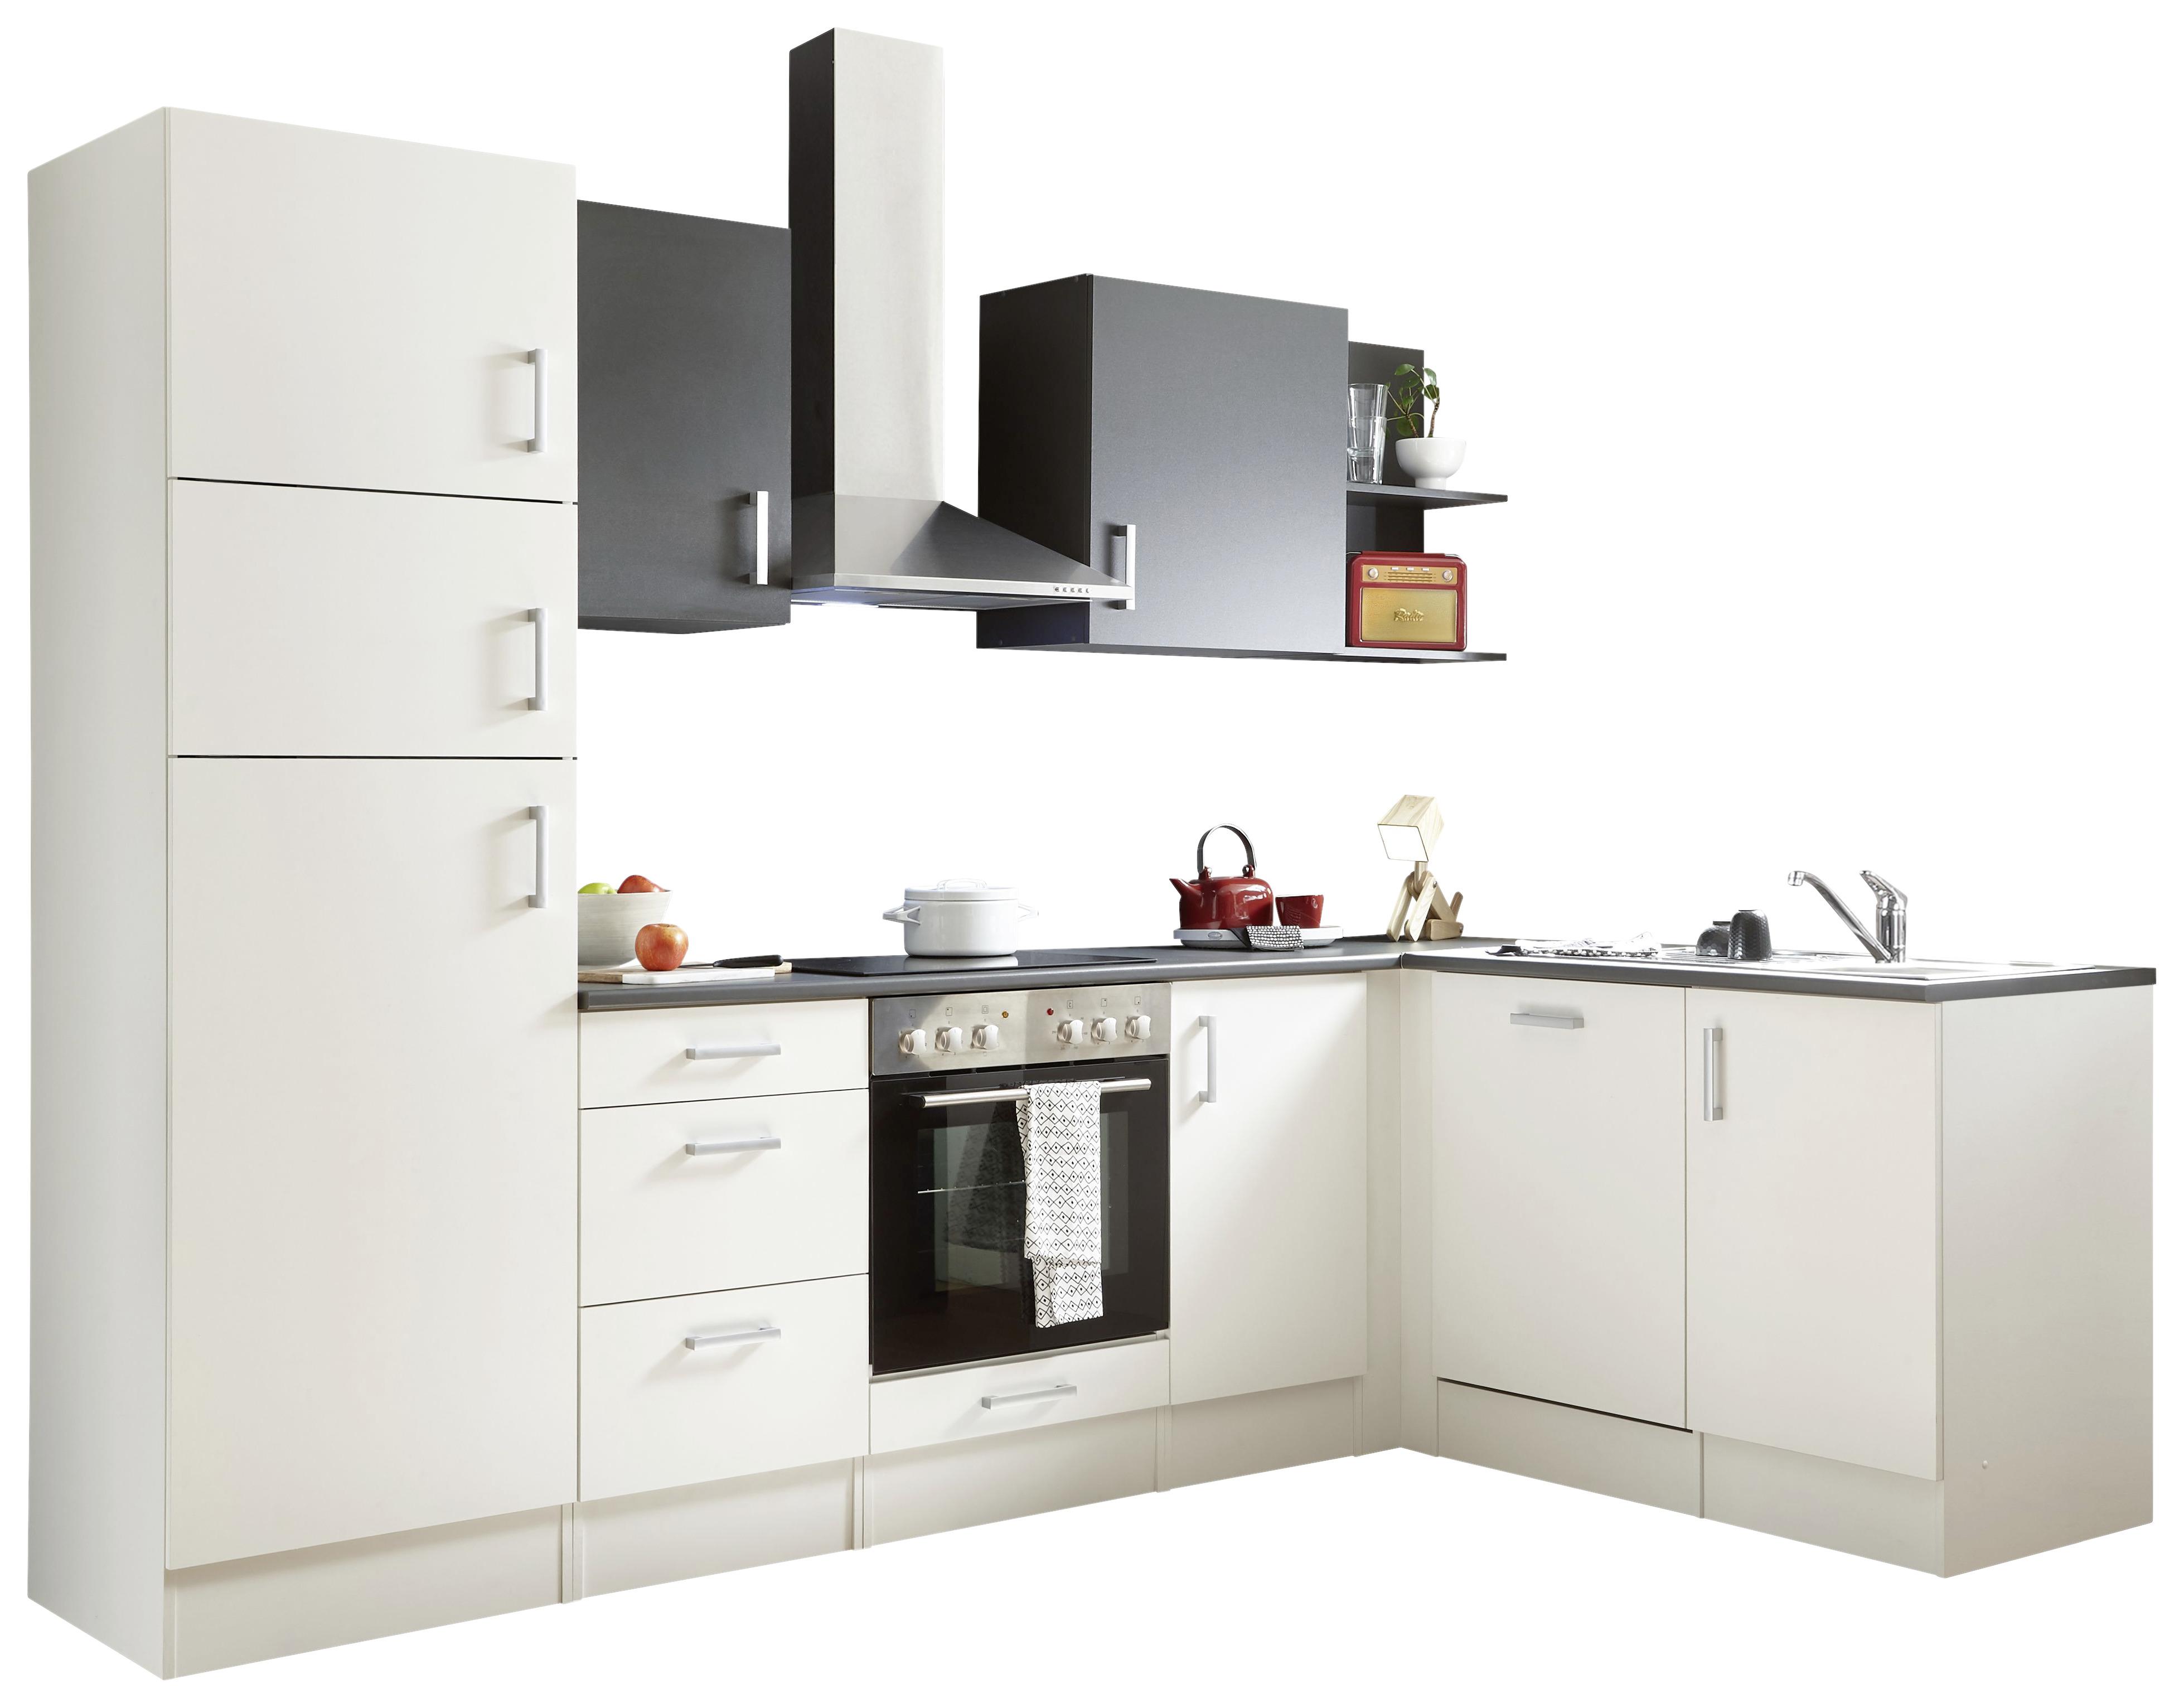 Kuhinjski Blok Corner - bela/antracit, Basics, leseni material (280/175cm) - Modern Living